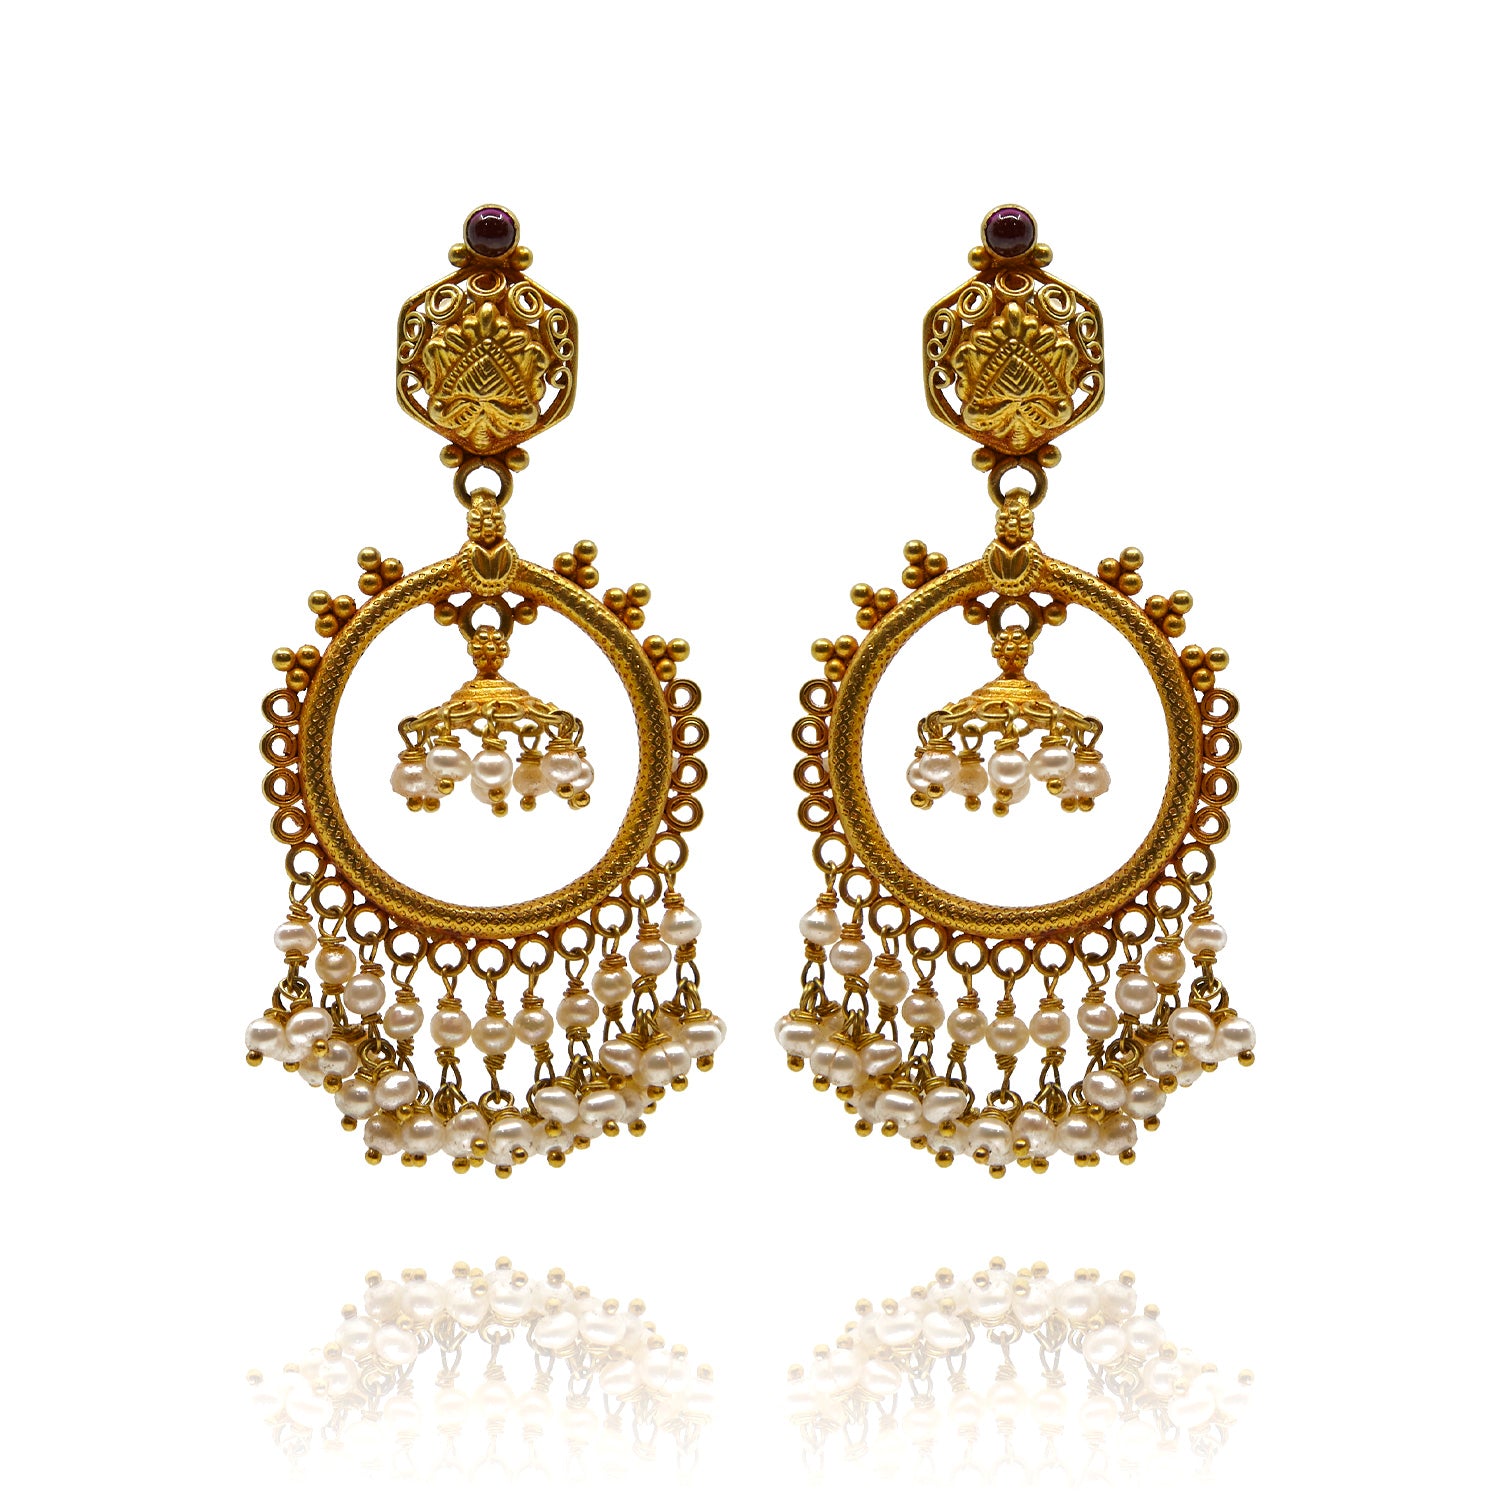 Handgefertigte Ohrringe aus Gelbgold mit Perlen und Rubin